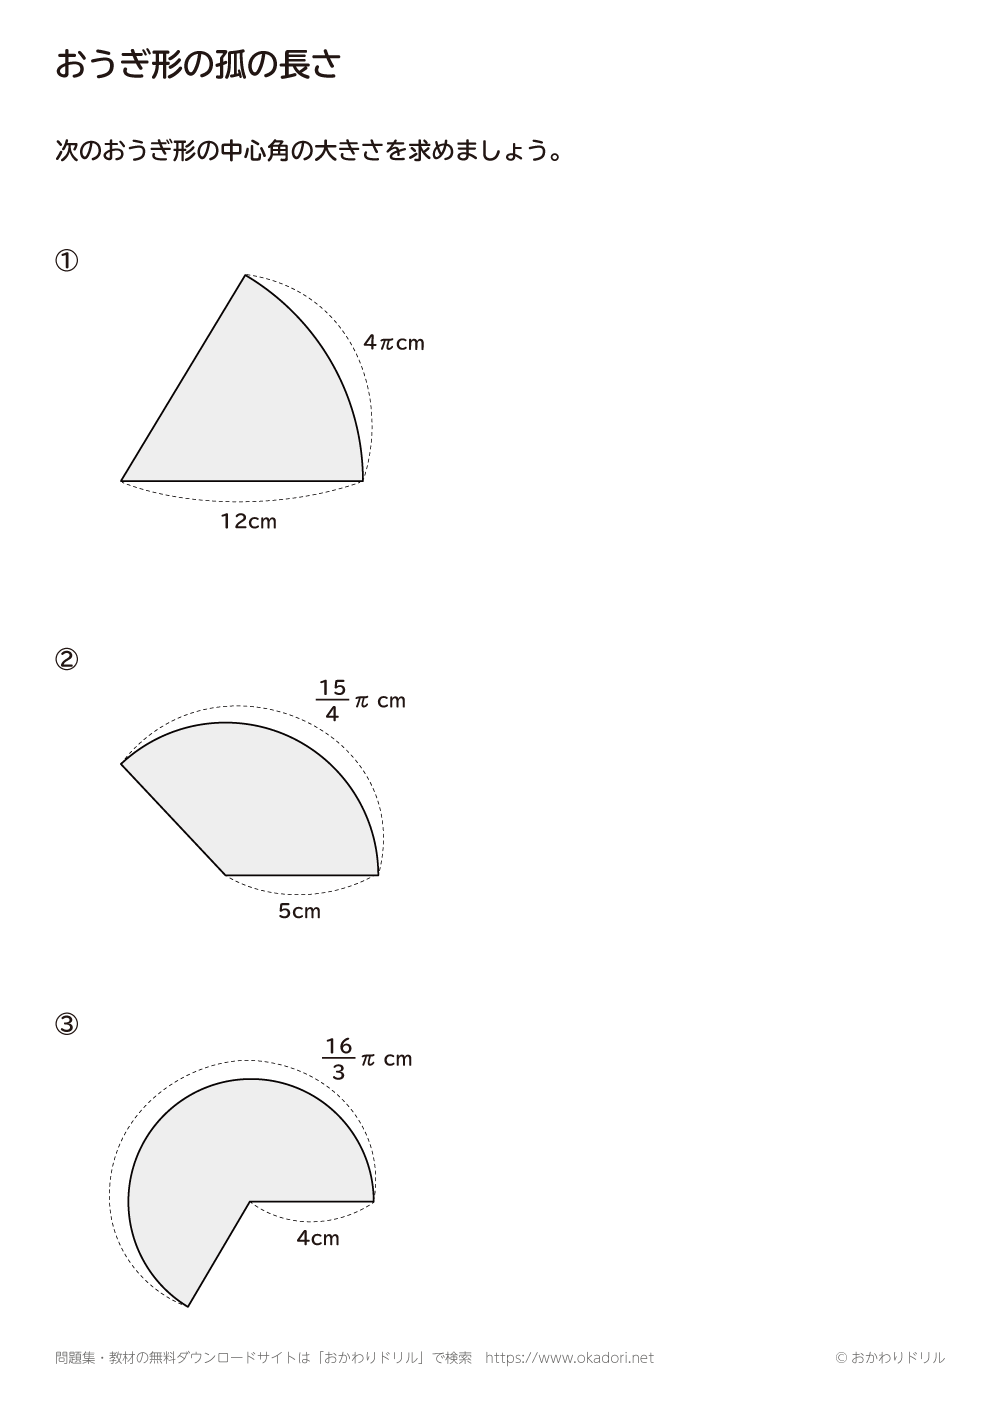 中学1年生 数学 無料問題集 おうぎ形の孤の長さ おかわりドリル